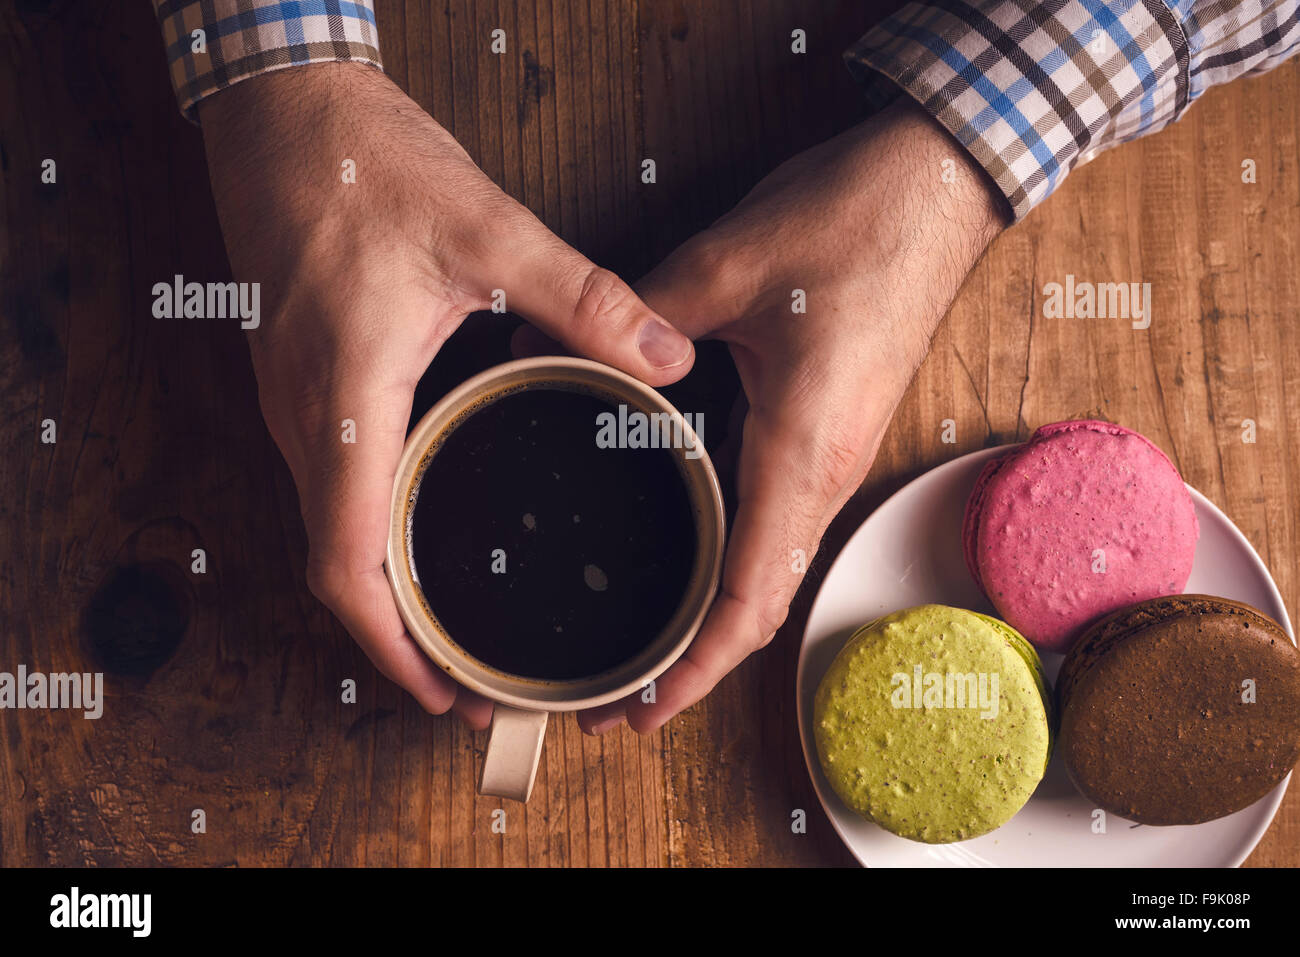 Café et biscuits macaron sur la table le matin, male hands holding cup avec boisson chaude, vue d'en haut, aux couleurs rétro Banque D'Images